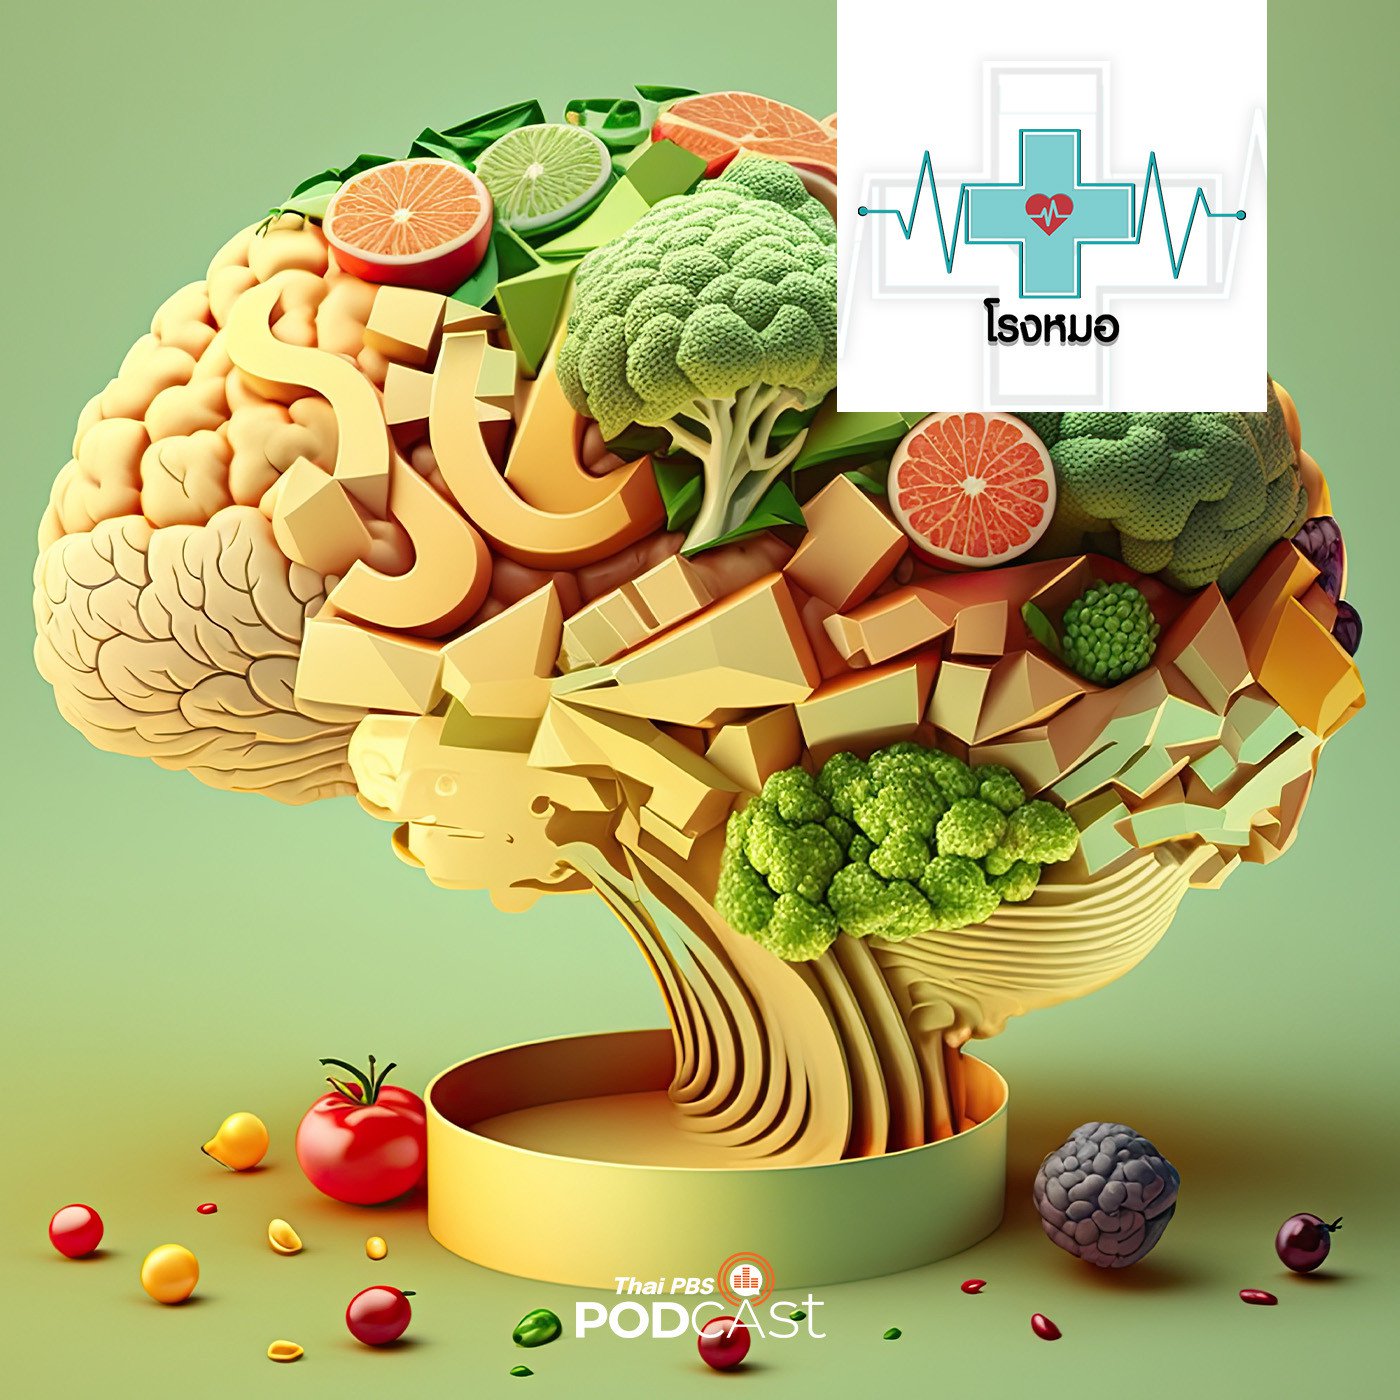 โรงหมอ EP. 792: ทำสมองให้แข็งแรงด้วยอาหาร ก่อนเสี่ยงสมองเสื่อมและอัลไซเมอร